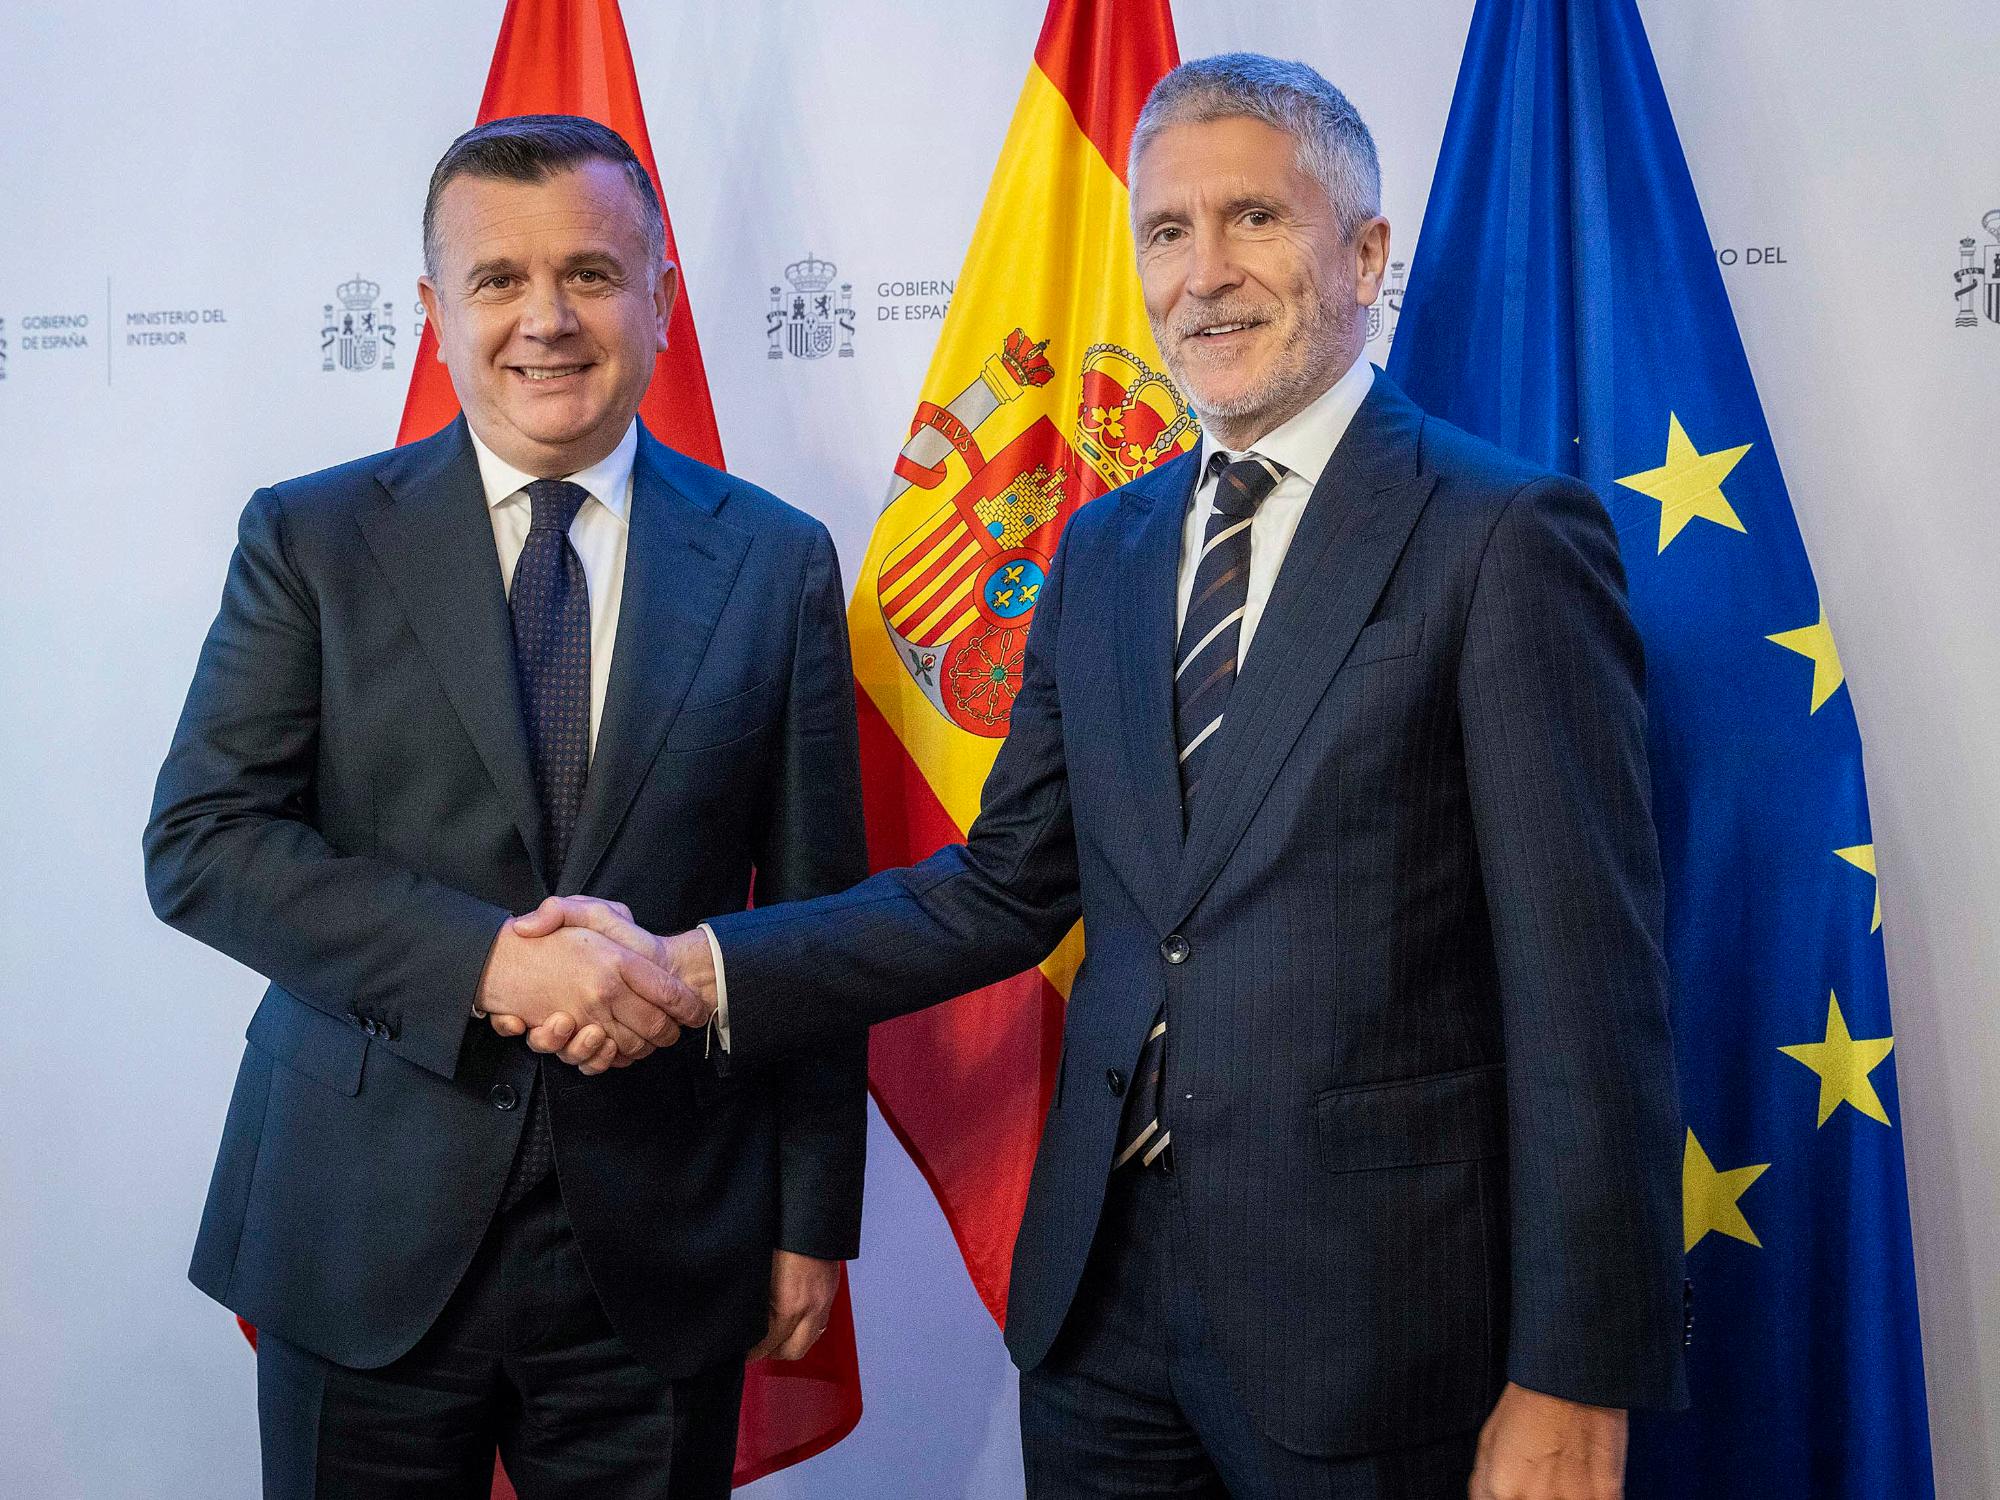 El ministro del Interior, Fernando Grande-Marlaska, y su homólogo albanés, Taulant Balla, dándose la mano.